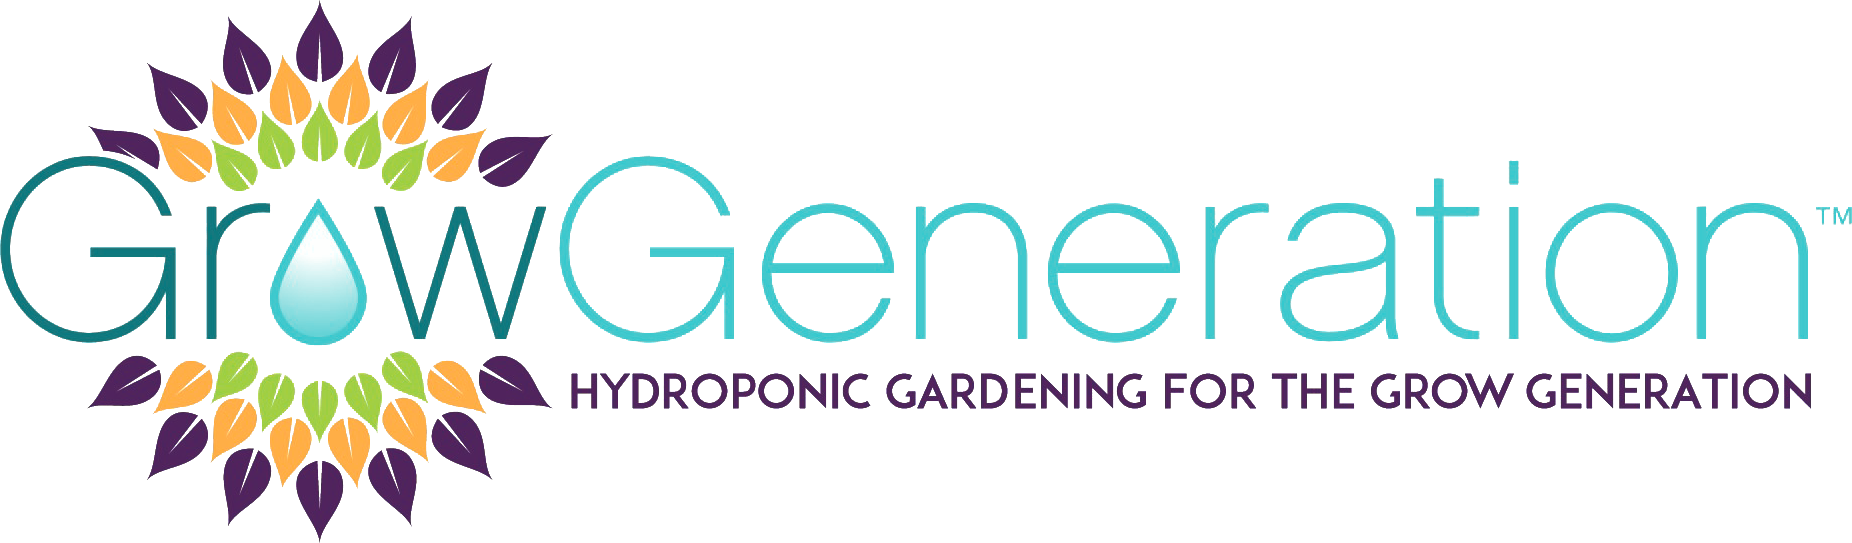 GrowGeneration
 logo large (transparent PNG)